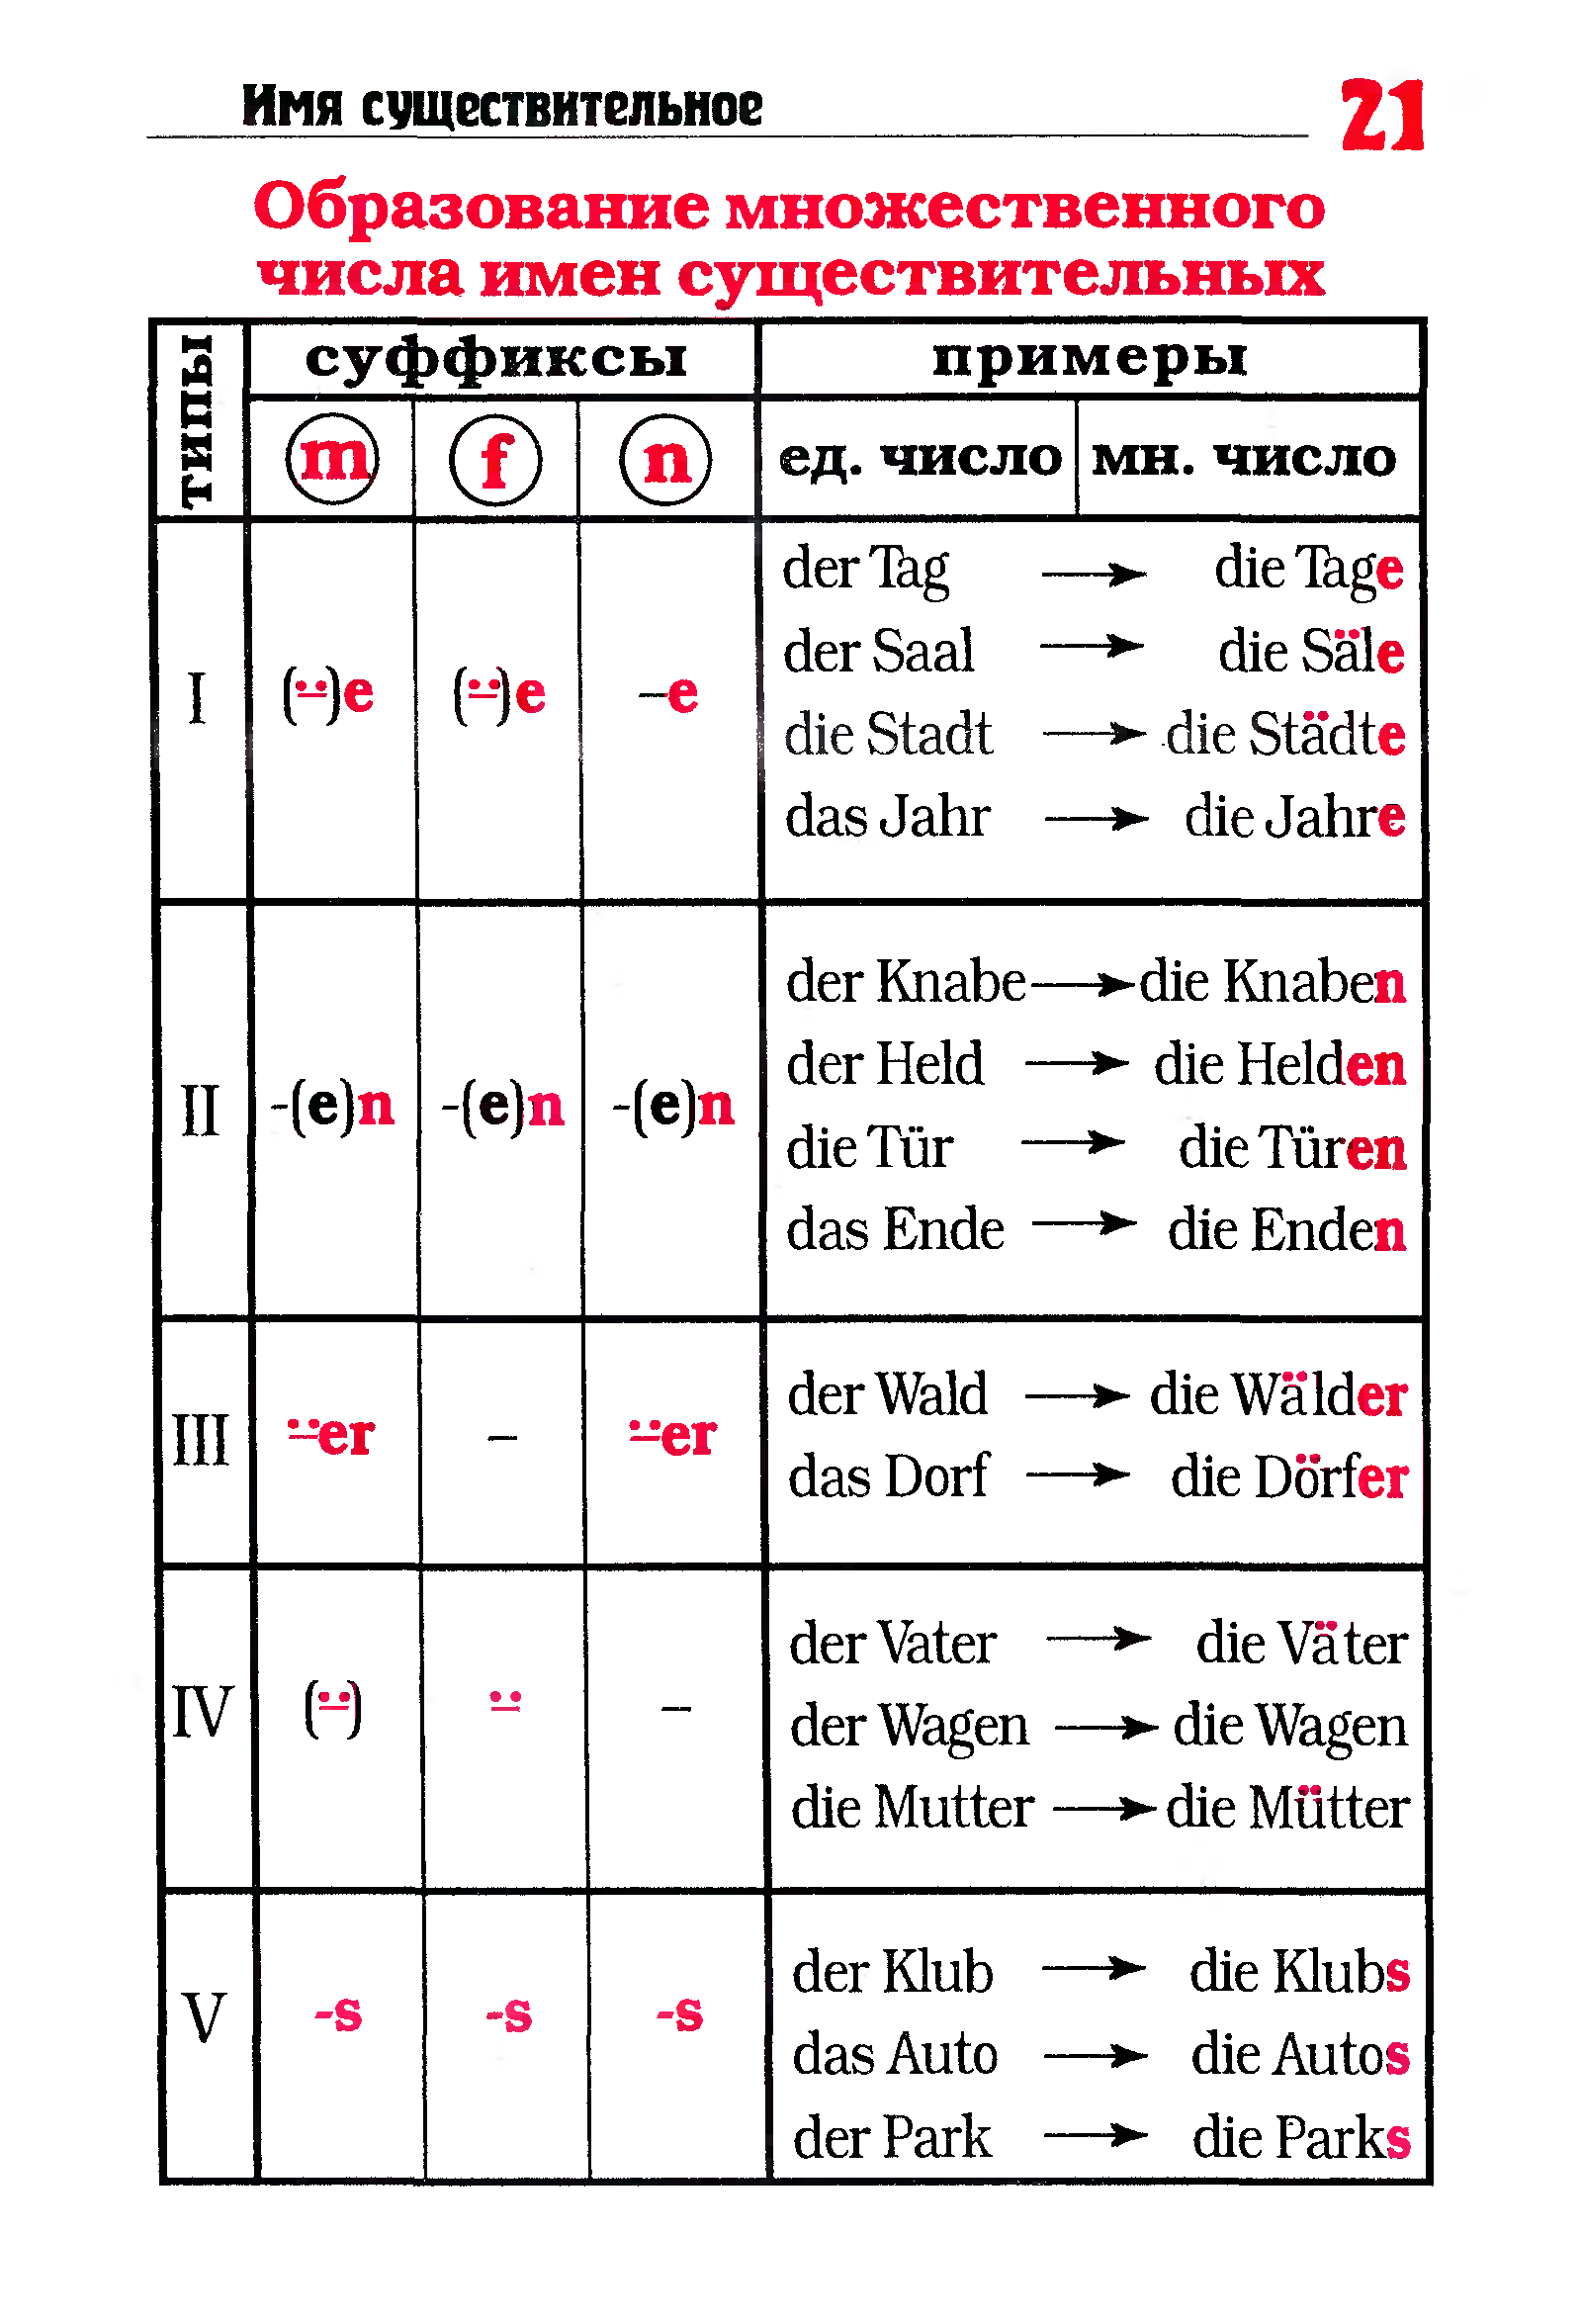 Правило образования множественного числа в немецком языке